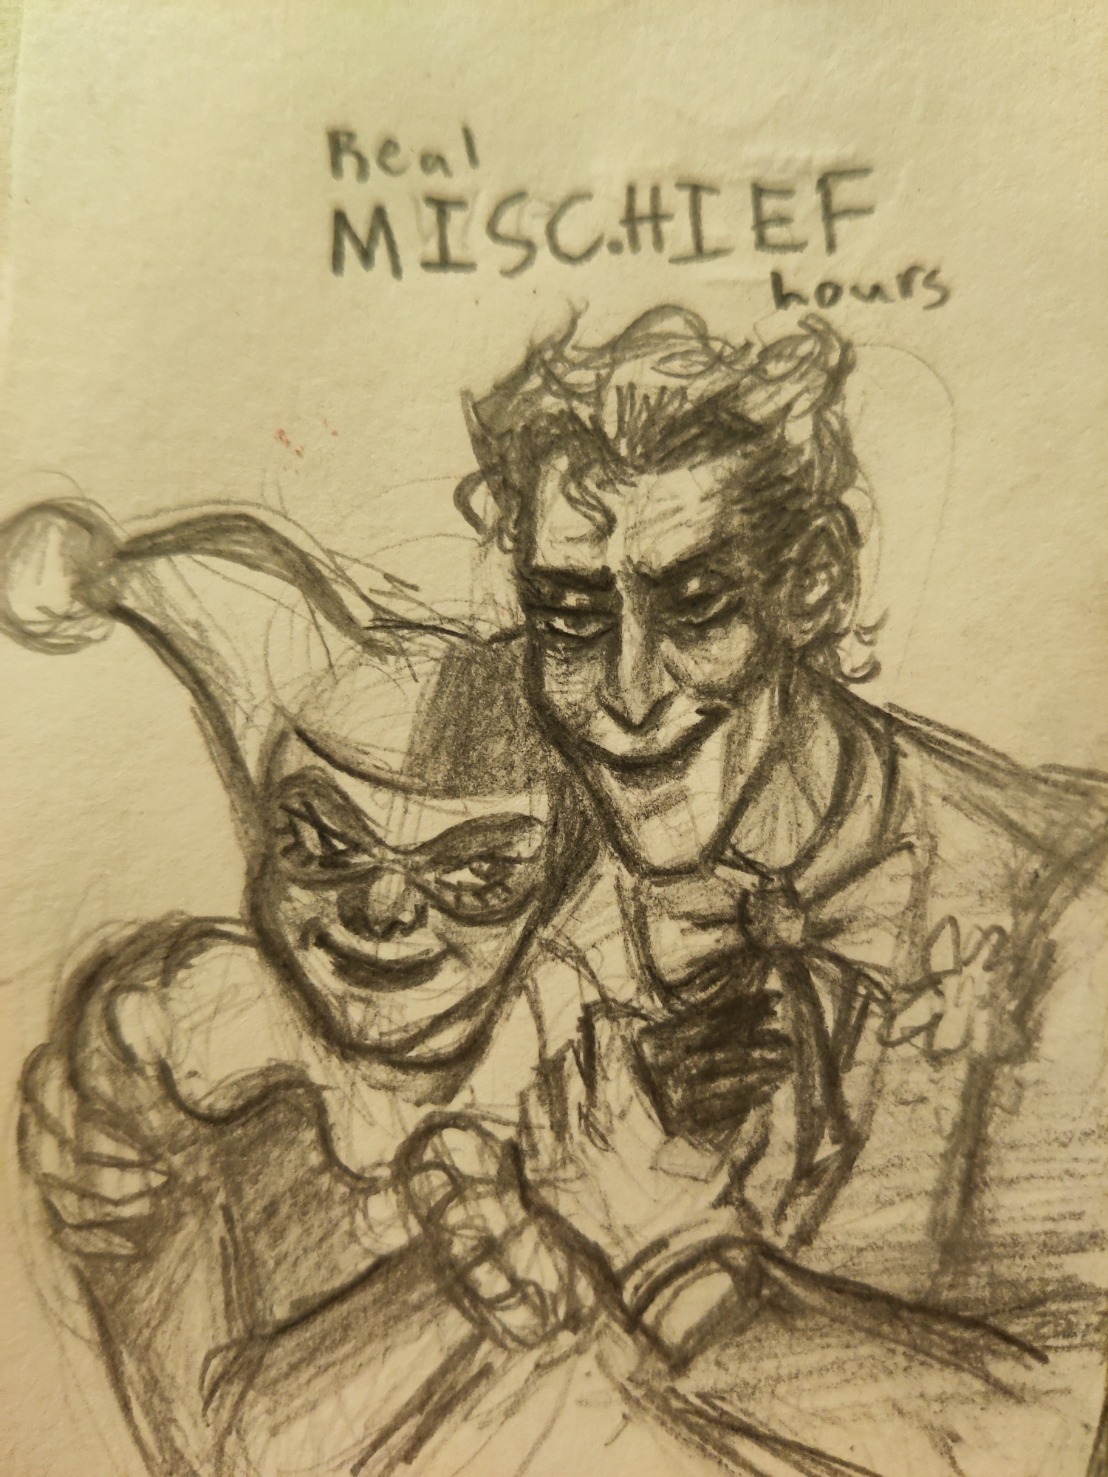 Mischief the clown